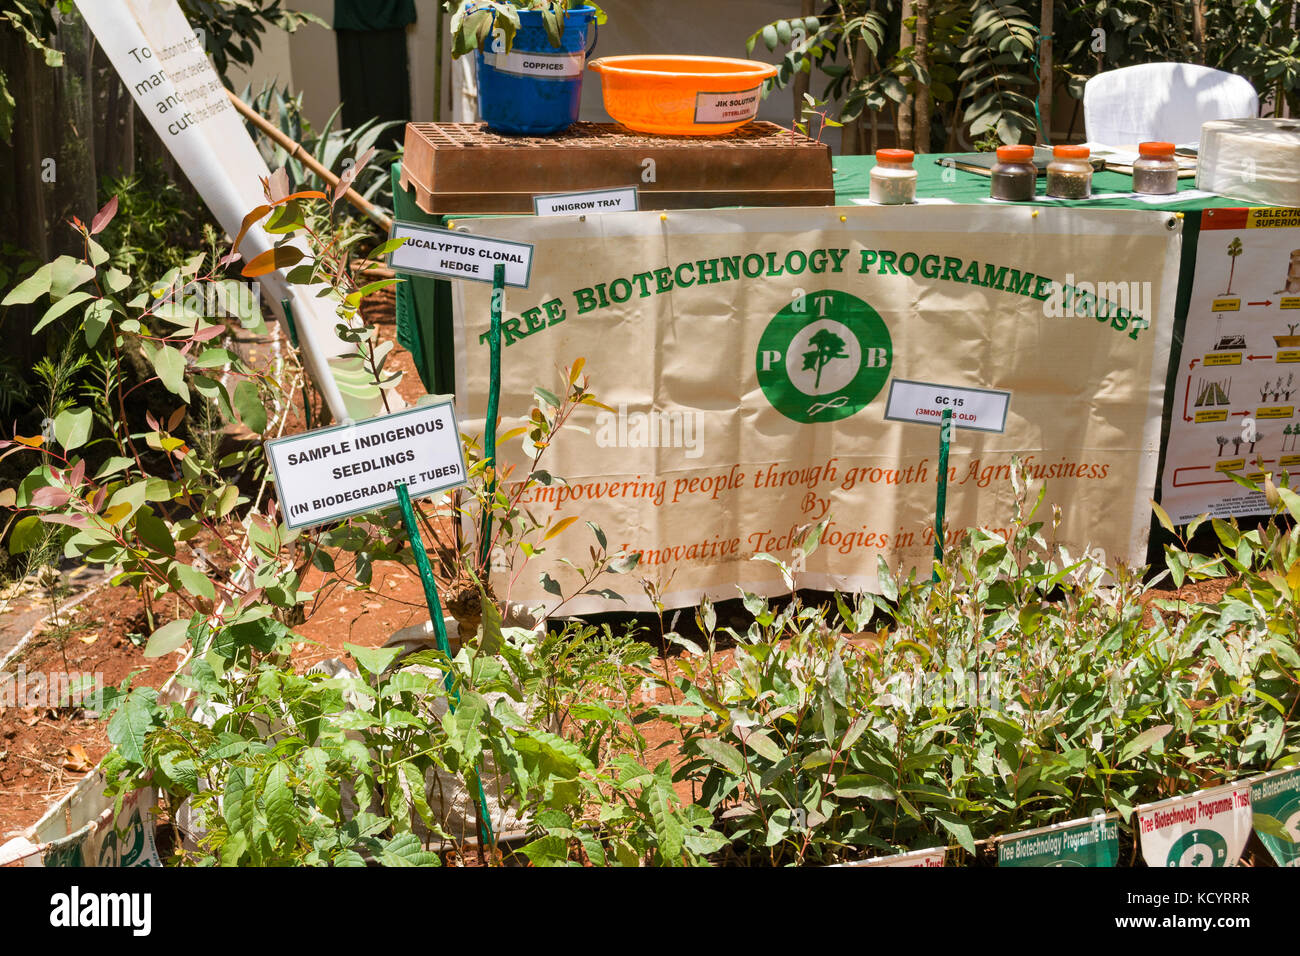 Baum Biotechnologie vertrauen Anzeige, Nairobi Internationale Fachmesse, Kenia Stockfoto